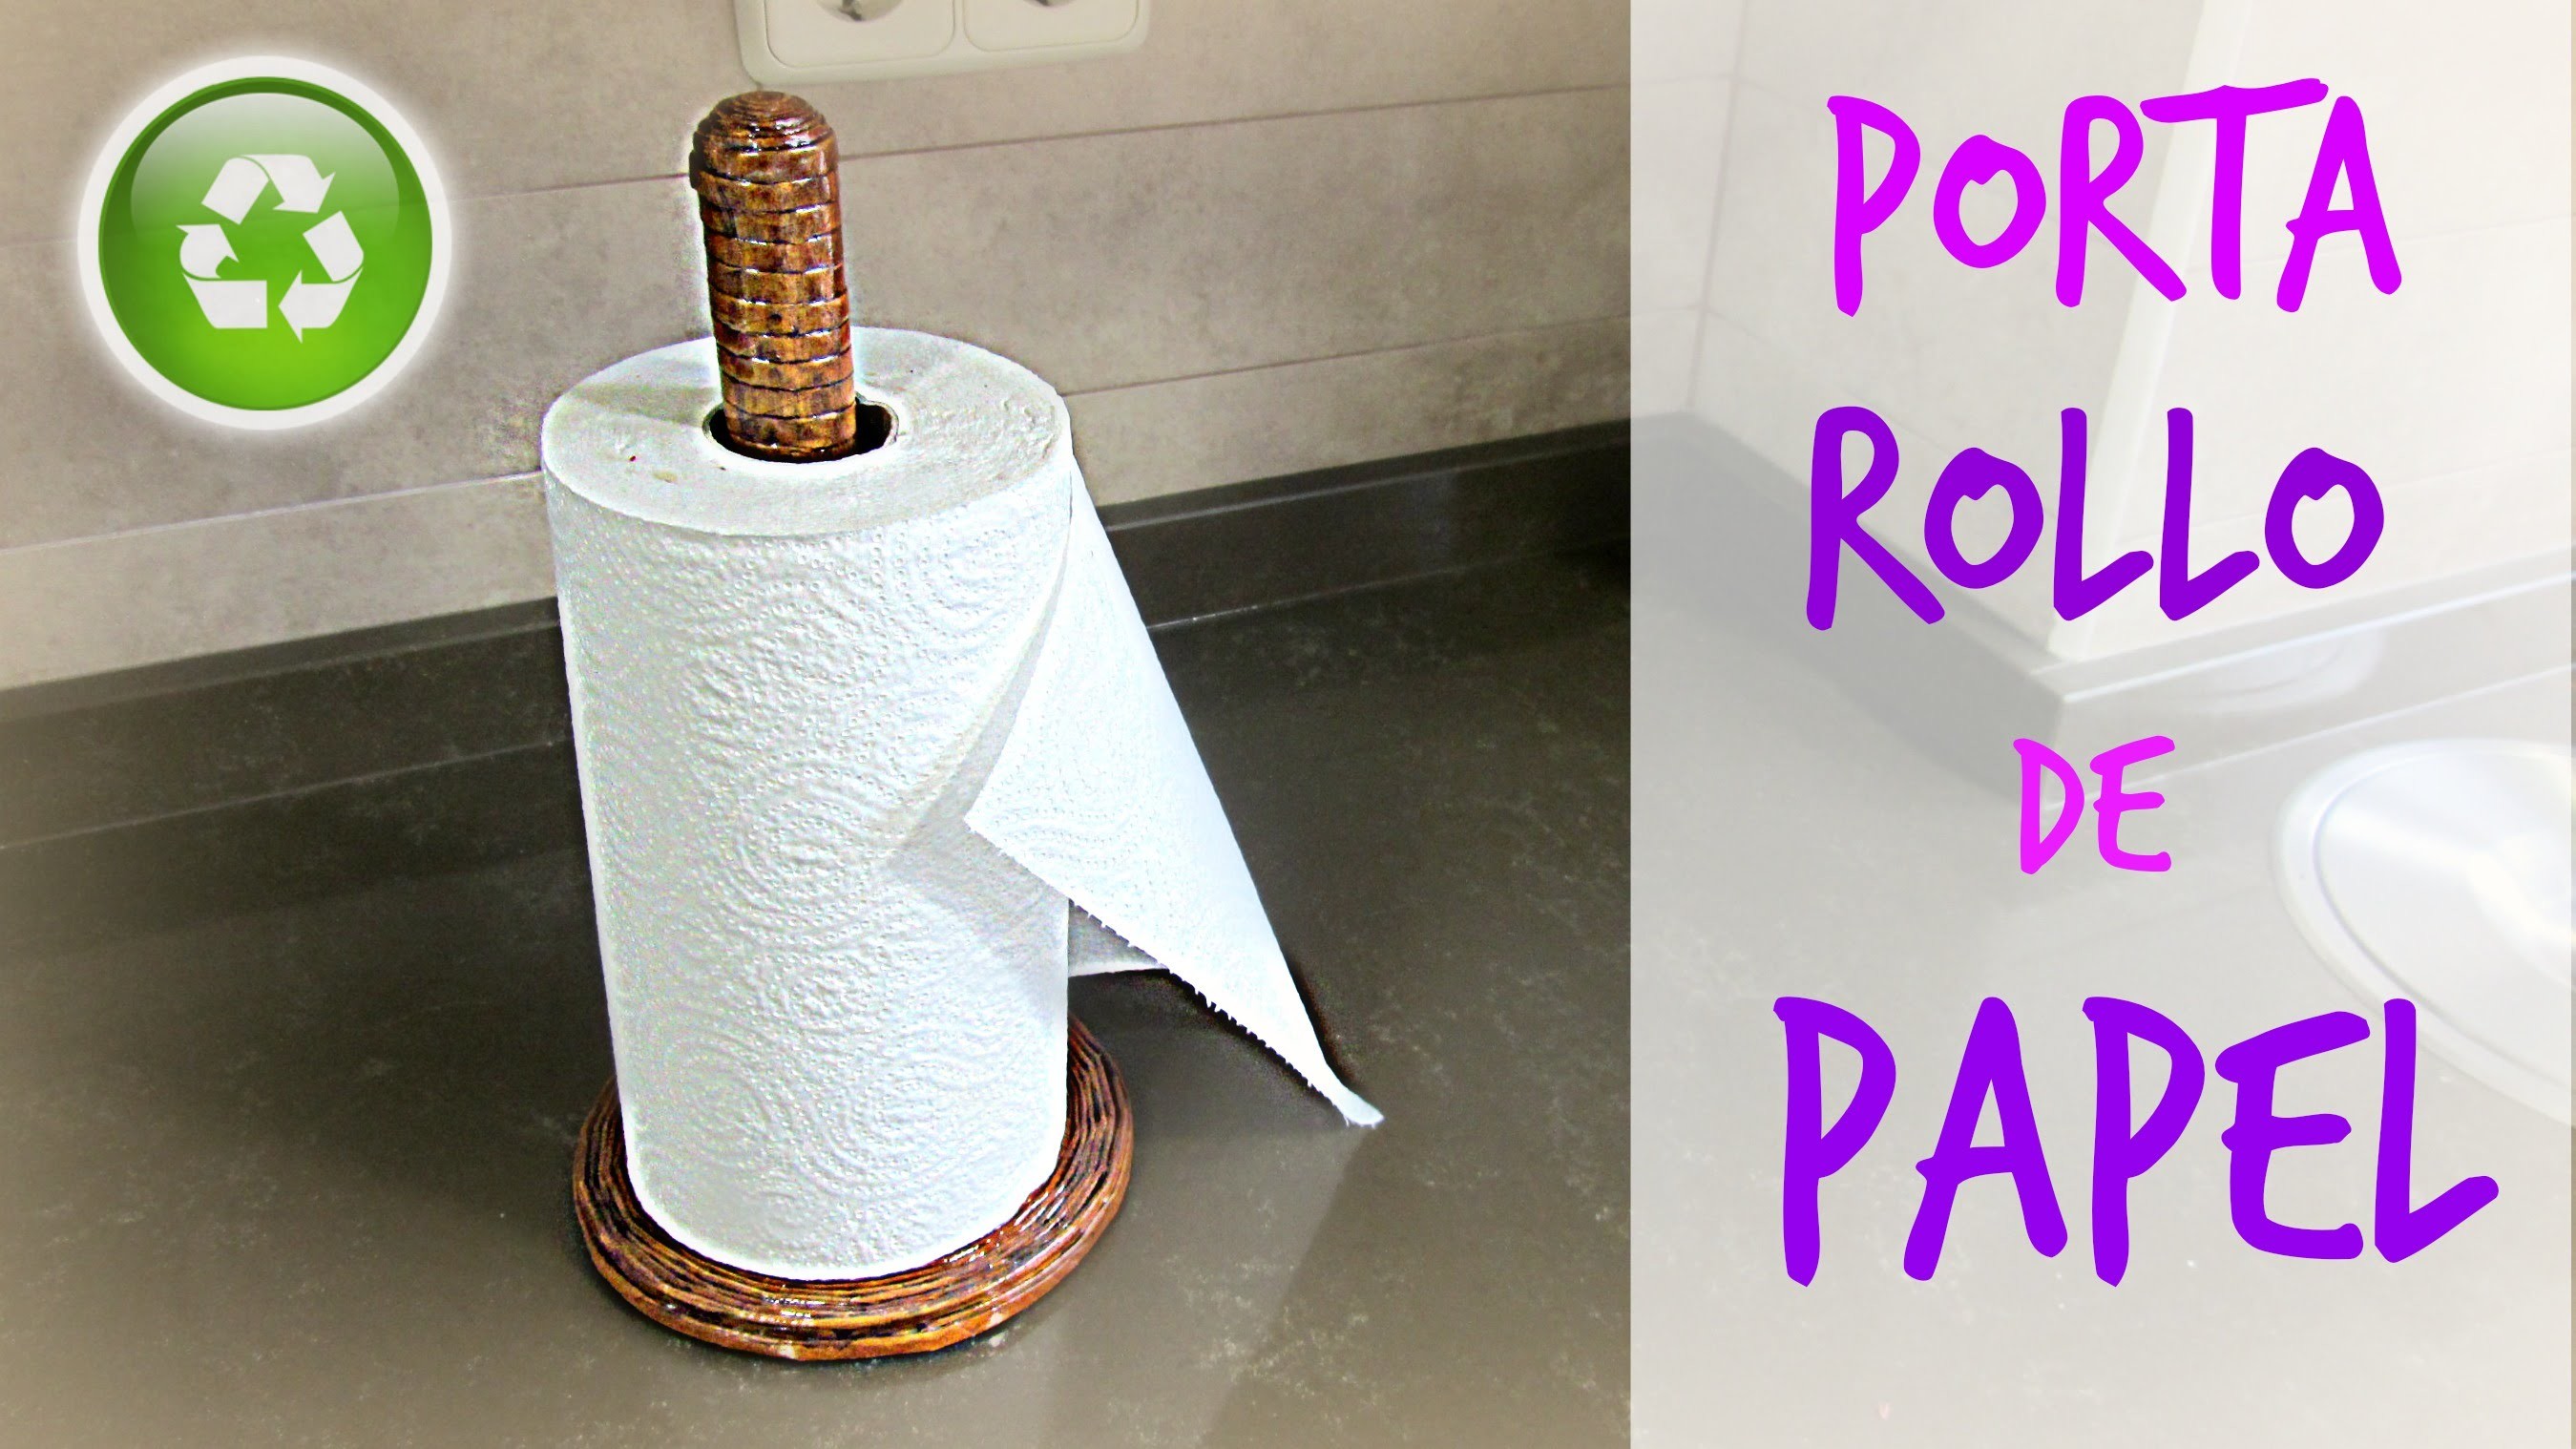 Cómo hacer un porta rollo de papel. How to make a paper towel roll holder.